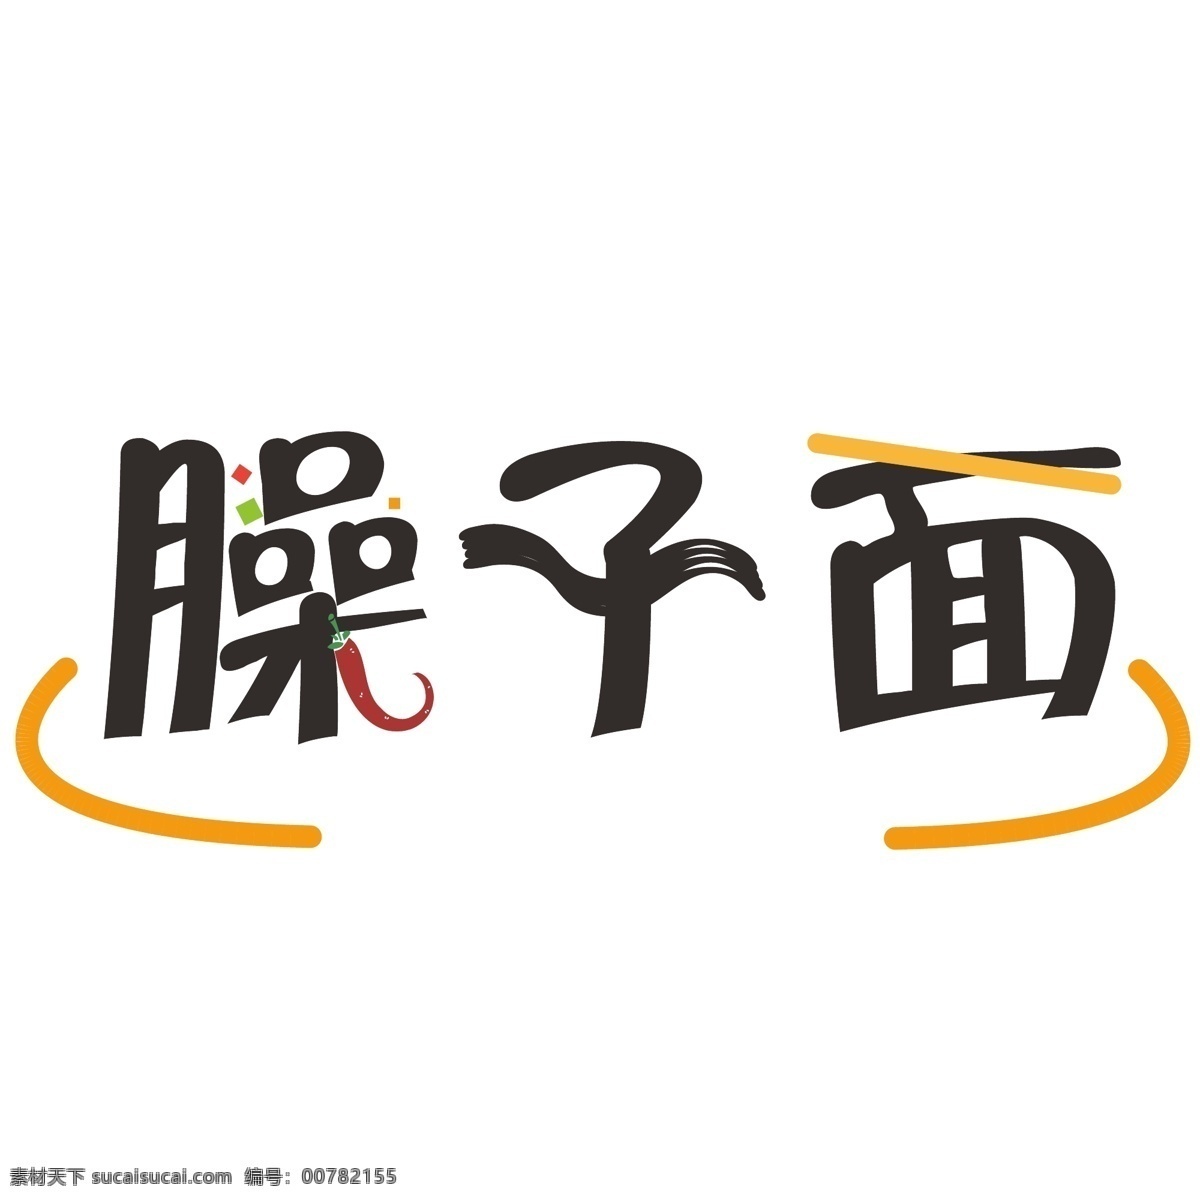 臊子面 臊子 面条 辣椒 字体设计 logo logo设计